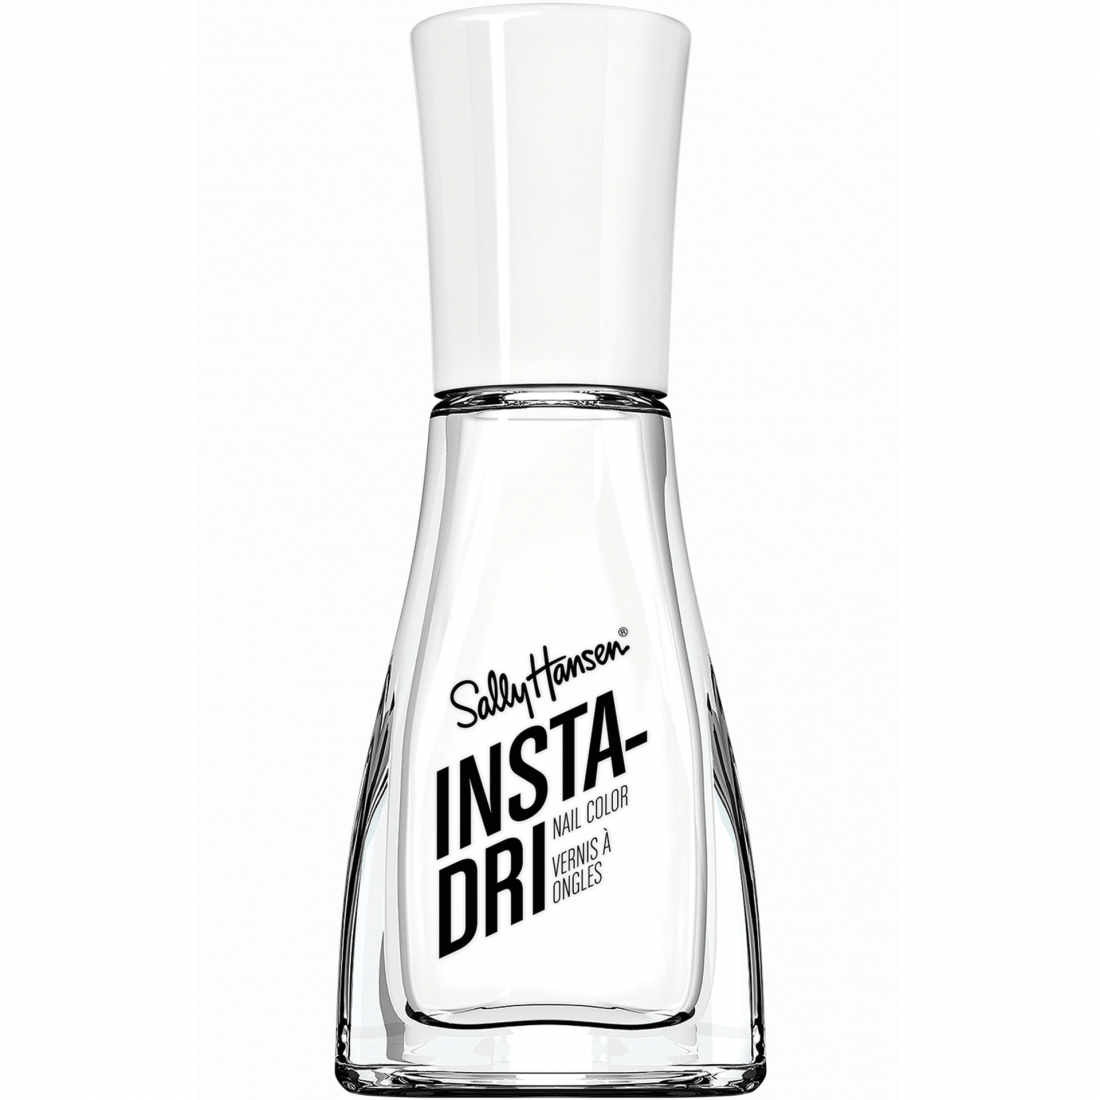 'Insta-Dri' Nail Polish - 113 White On Time 9.17 ml